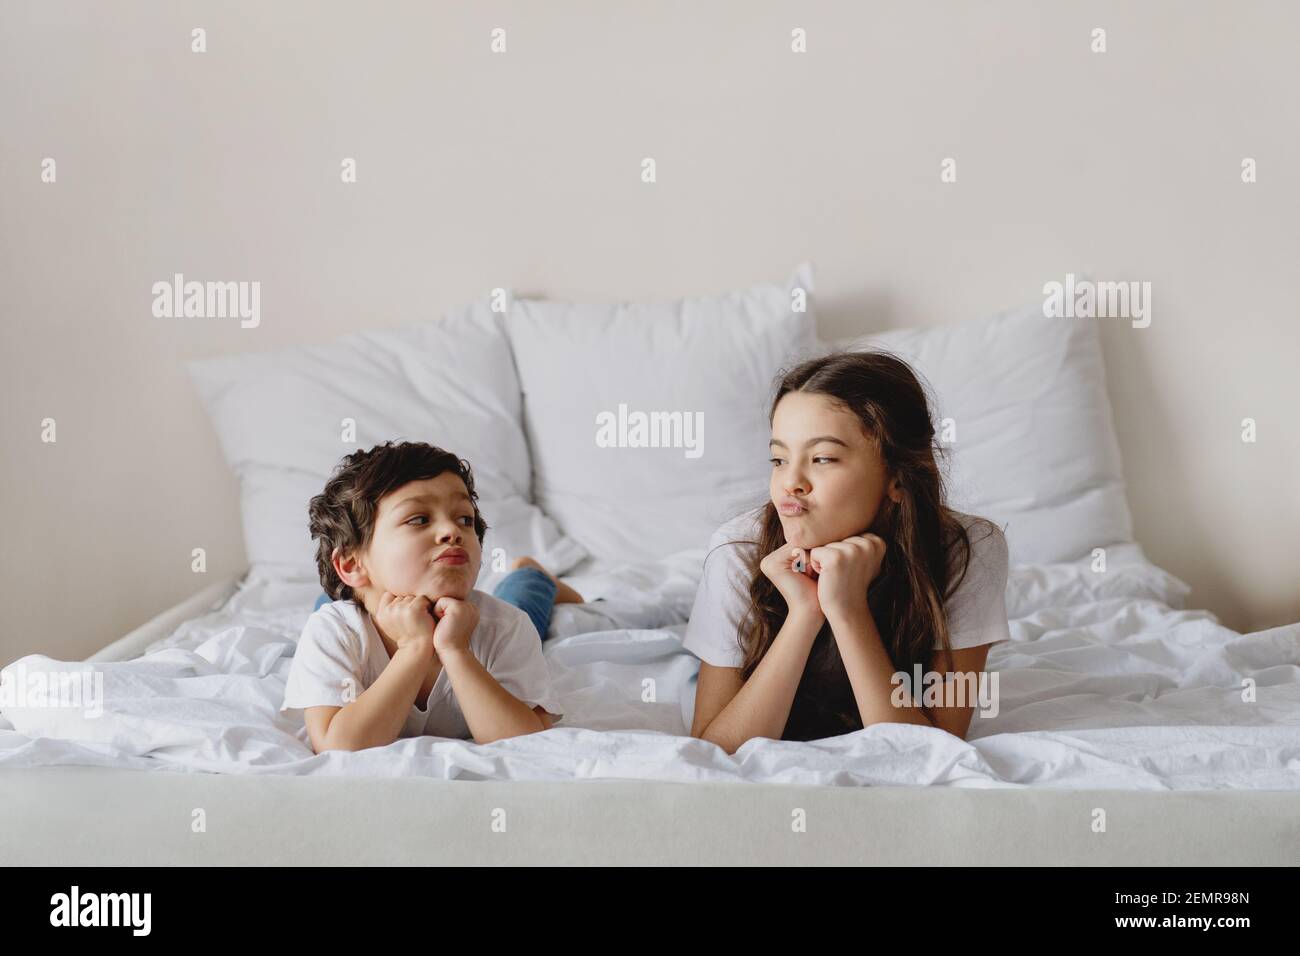 Carino ragazzino e sua sorella che si guardano mentre si sdraiano su un letto. Foto Stock